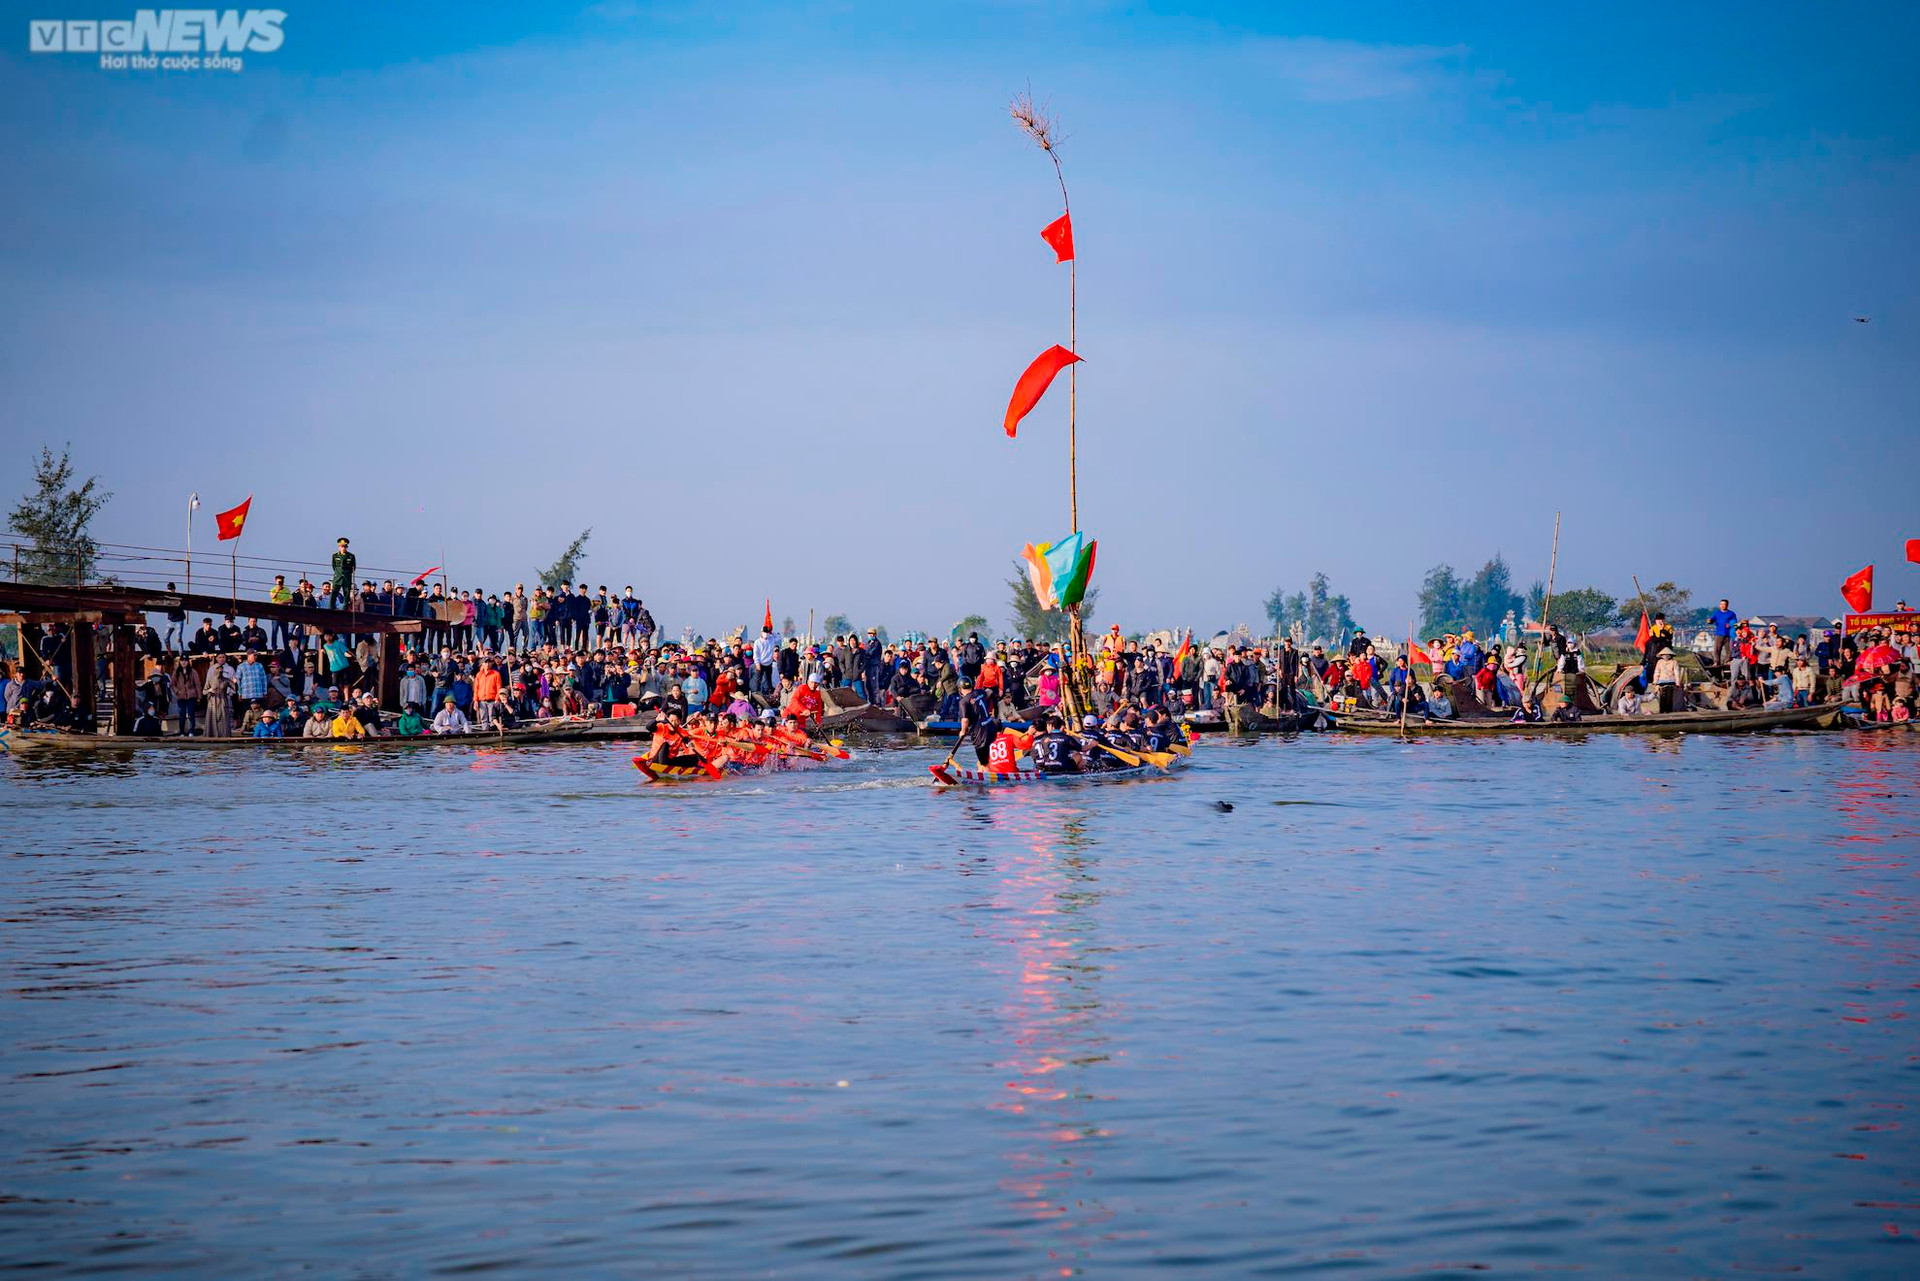 Trai tráng tranh tài đua thuyền ở lễ hội Cầu ngư lâu đời nhất cố đô Huế - 12